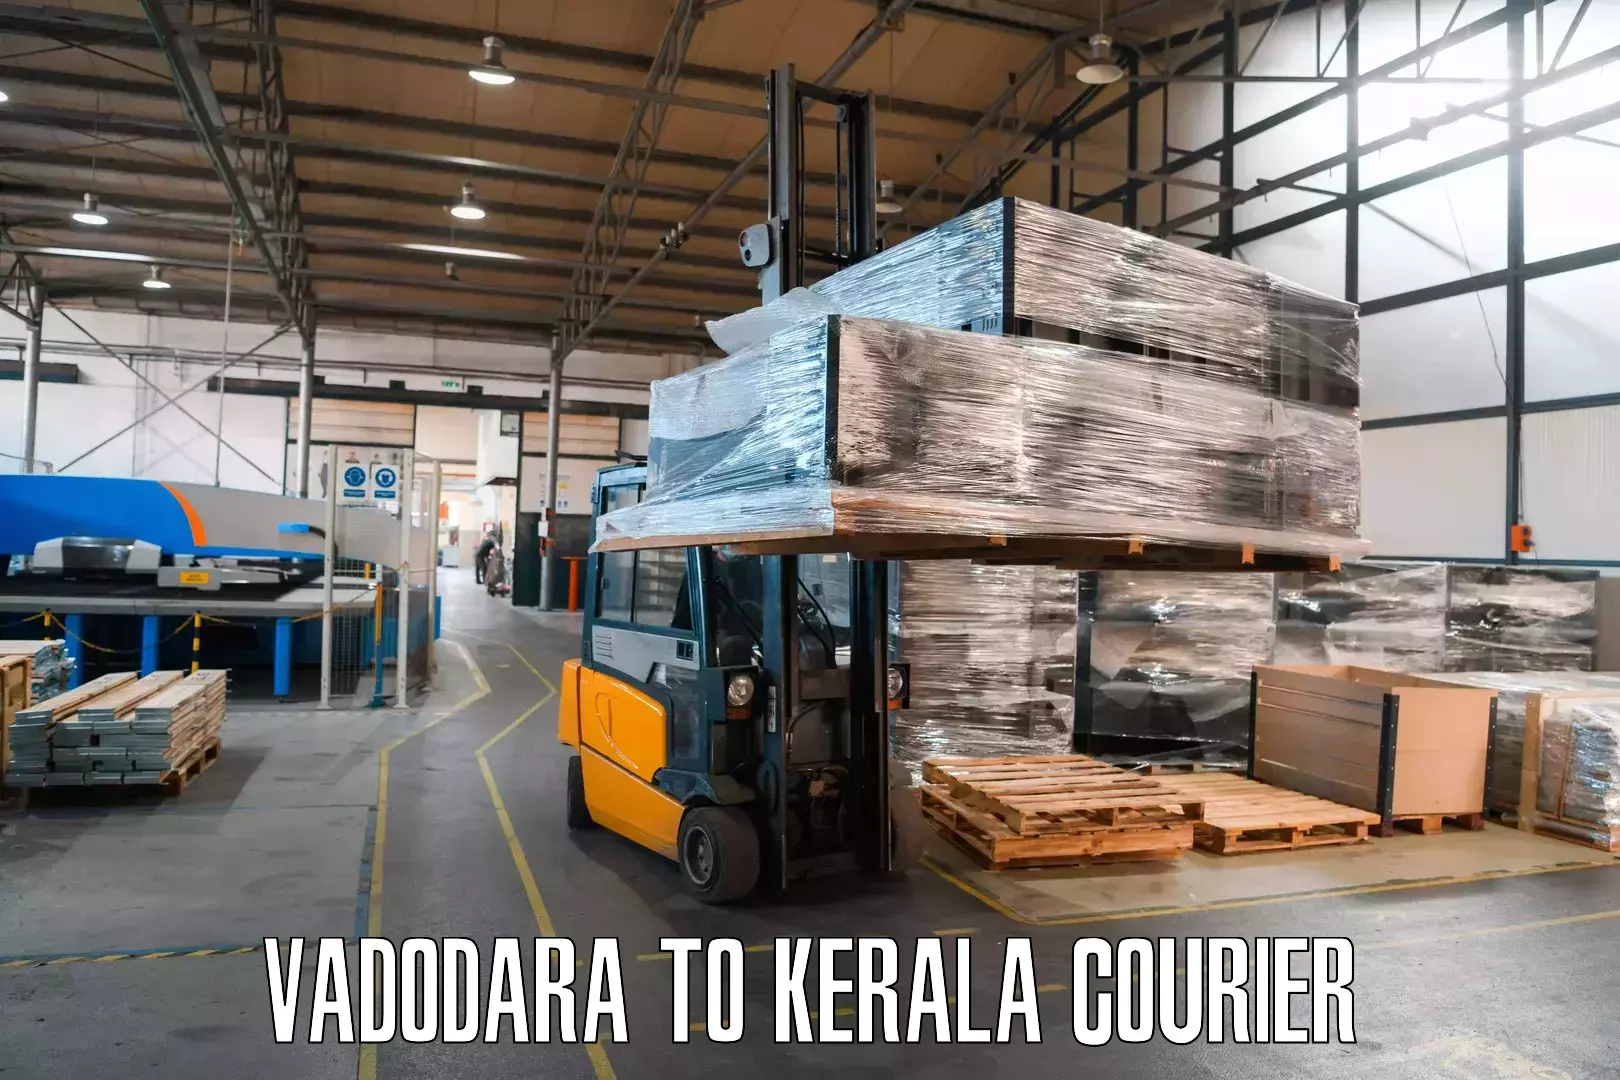 Express courier capabilities Vadodara to Kerala